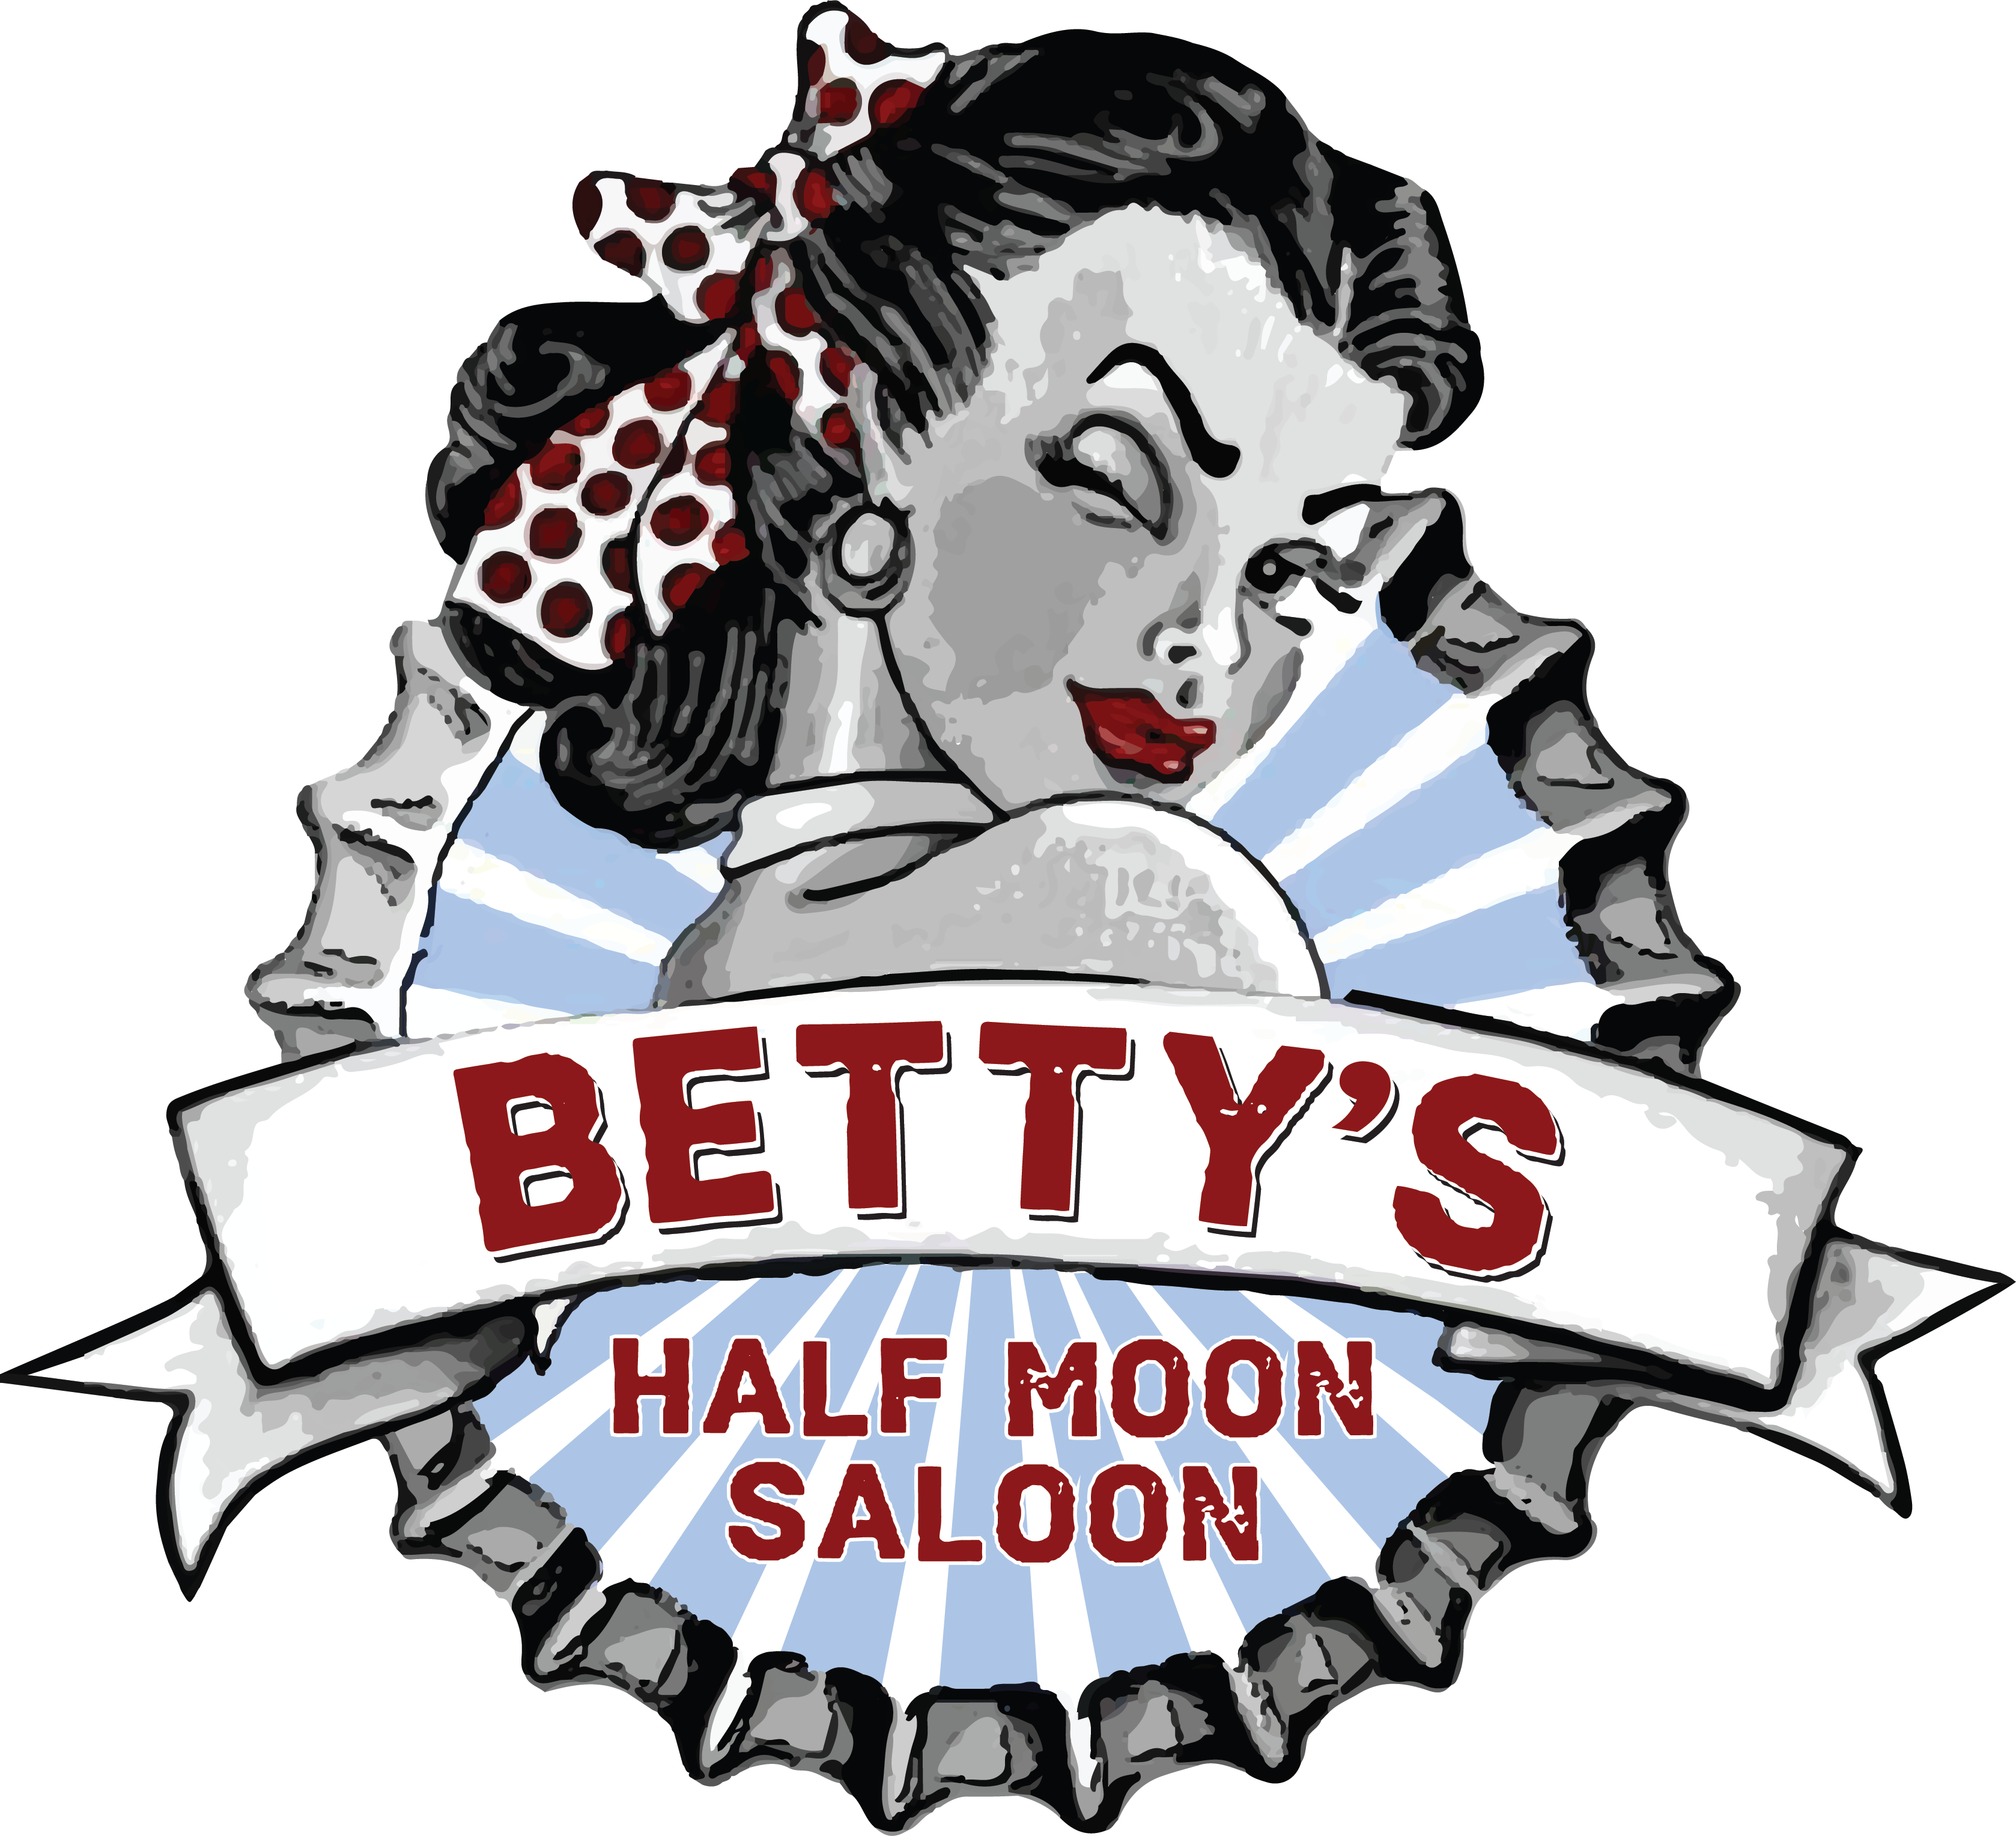 Bettys Half Moon Saloon - Bettys Half Moon Saloon (3356x3056)